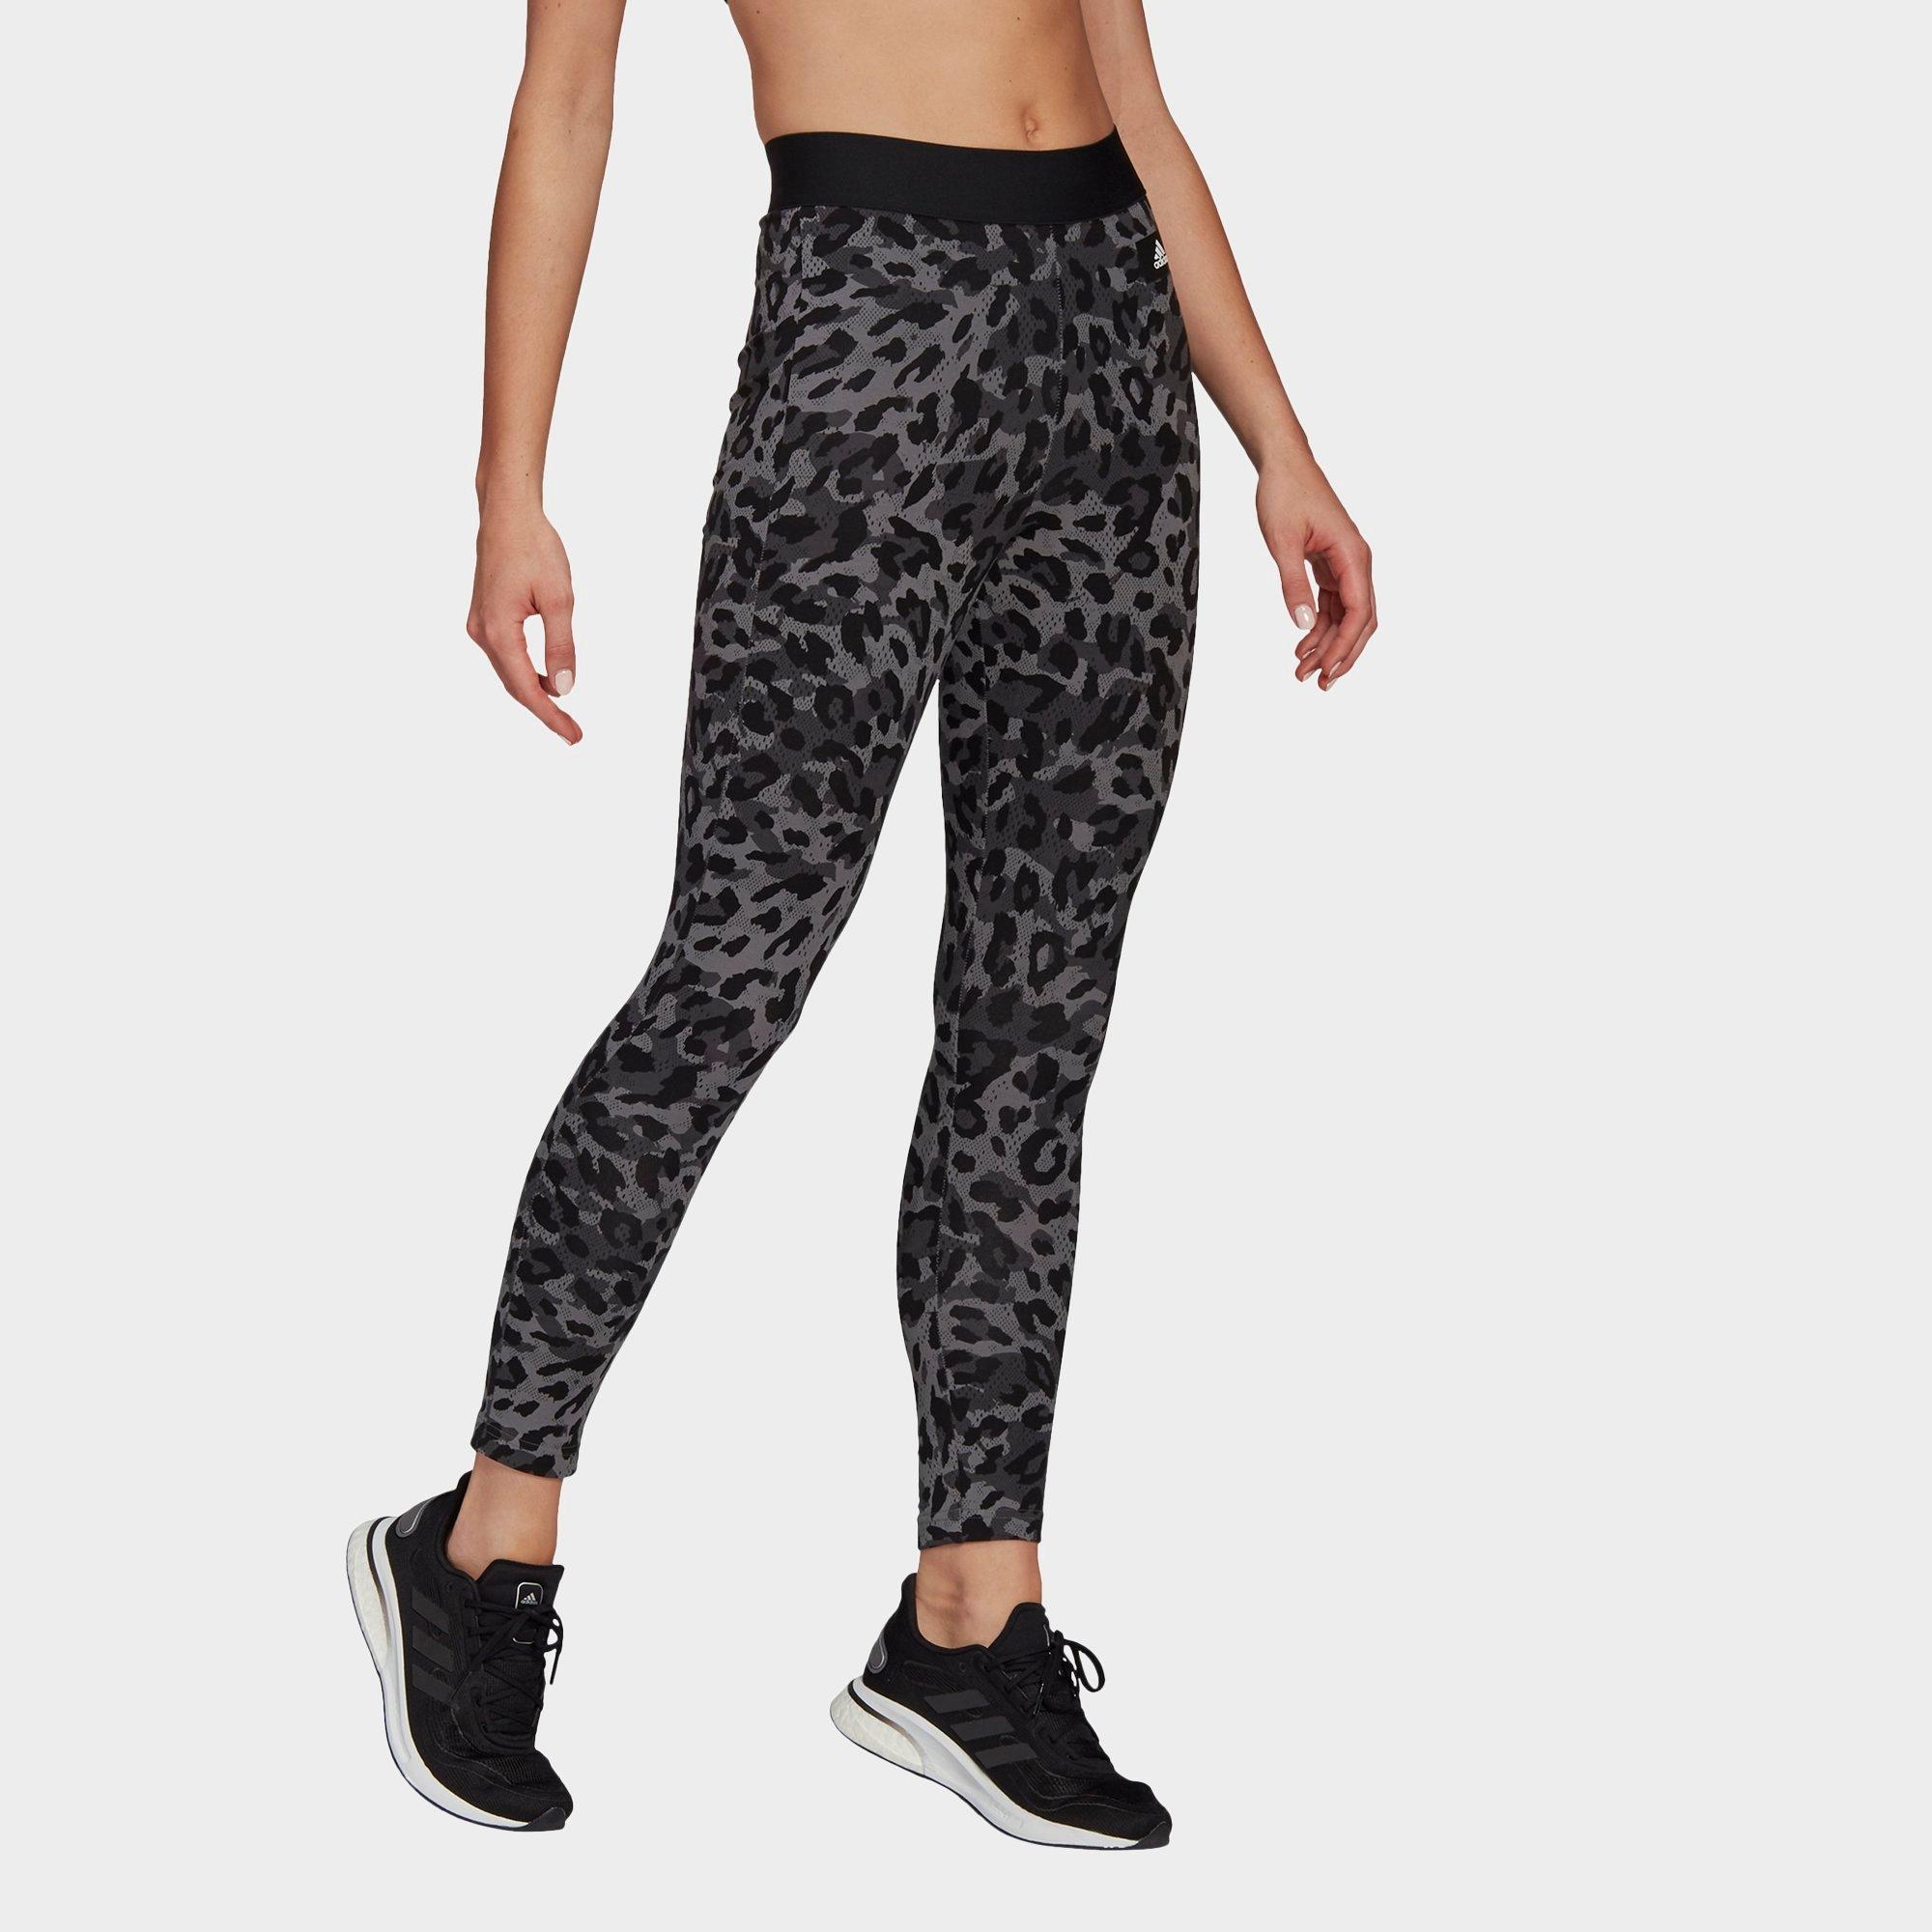 adidas leopard leggings